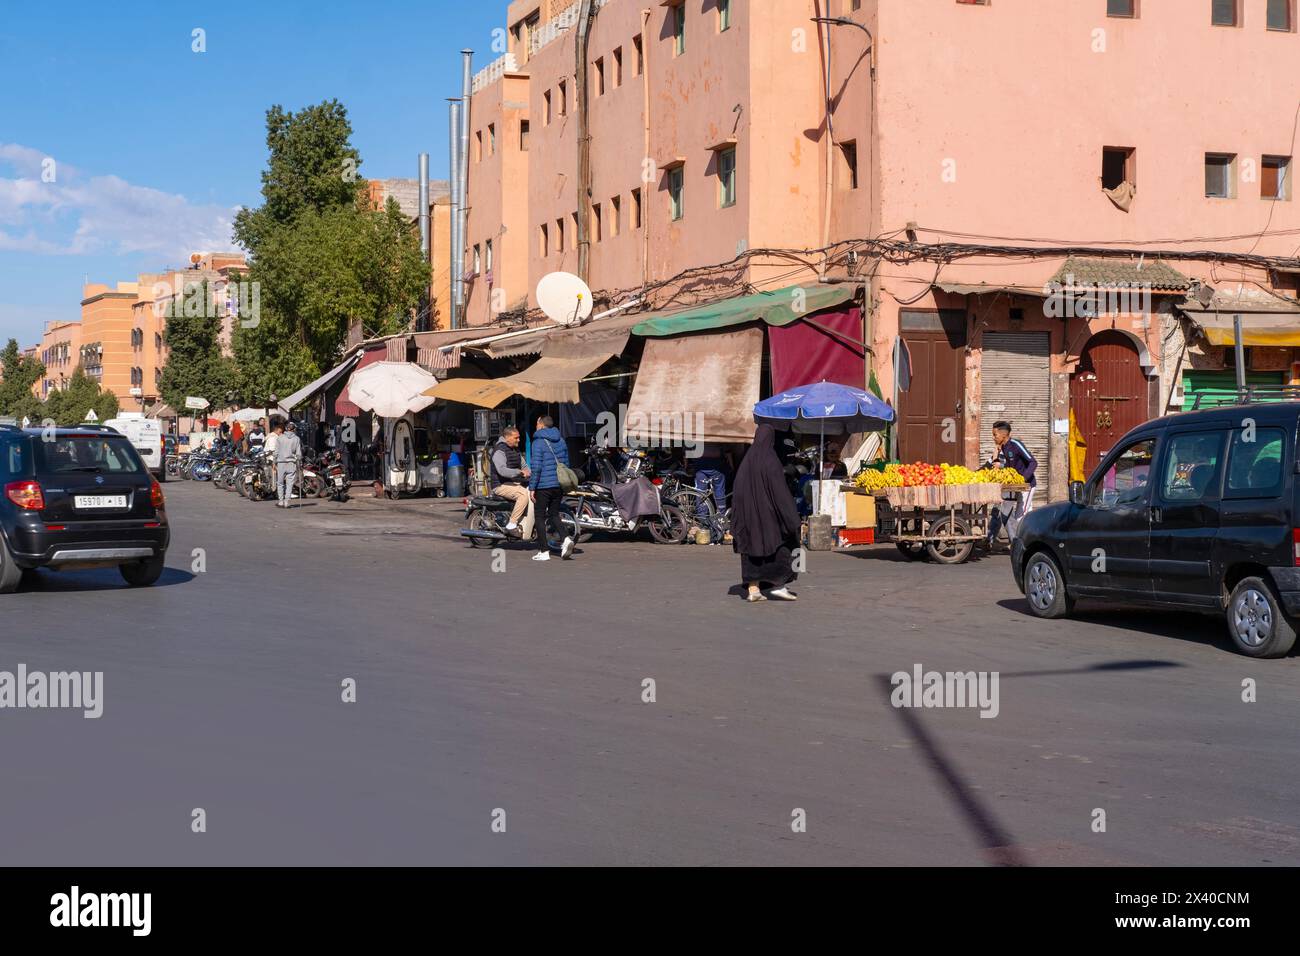 Auto- und Motorradverkehrsstraßen Afrikanische Stadt Marrakesch, städtischer Verkehr, moderner Transport und antike Architektur, Alltag, Marr Stockfoto